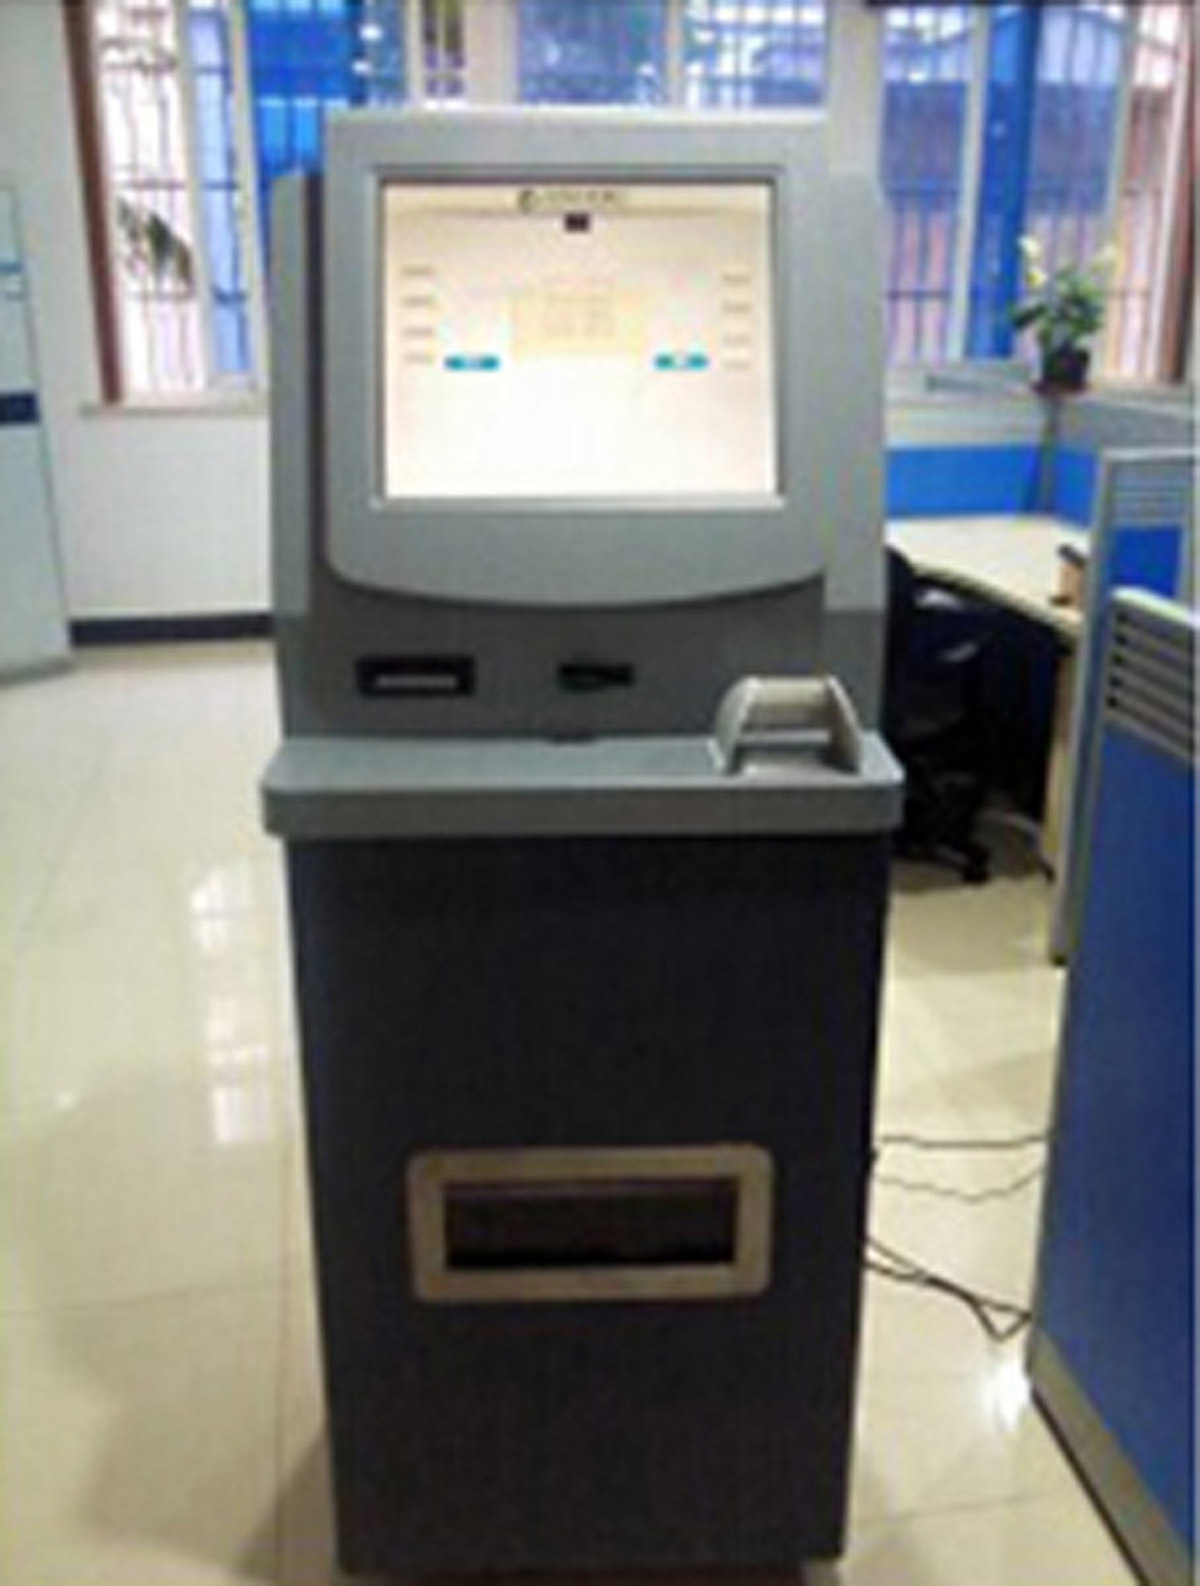 模拟安全模拟ATM提款操作